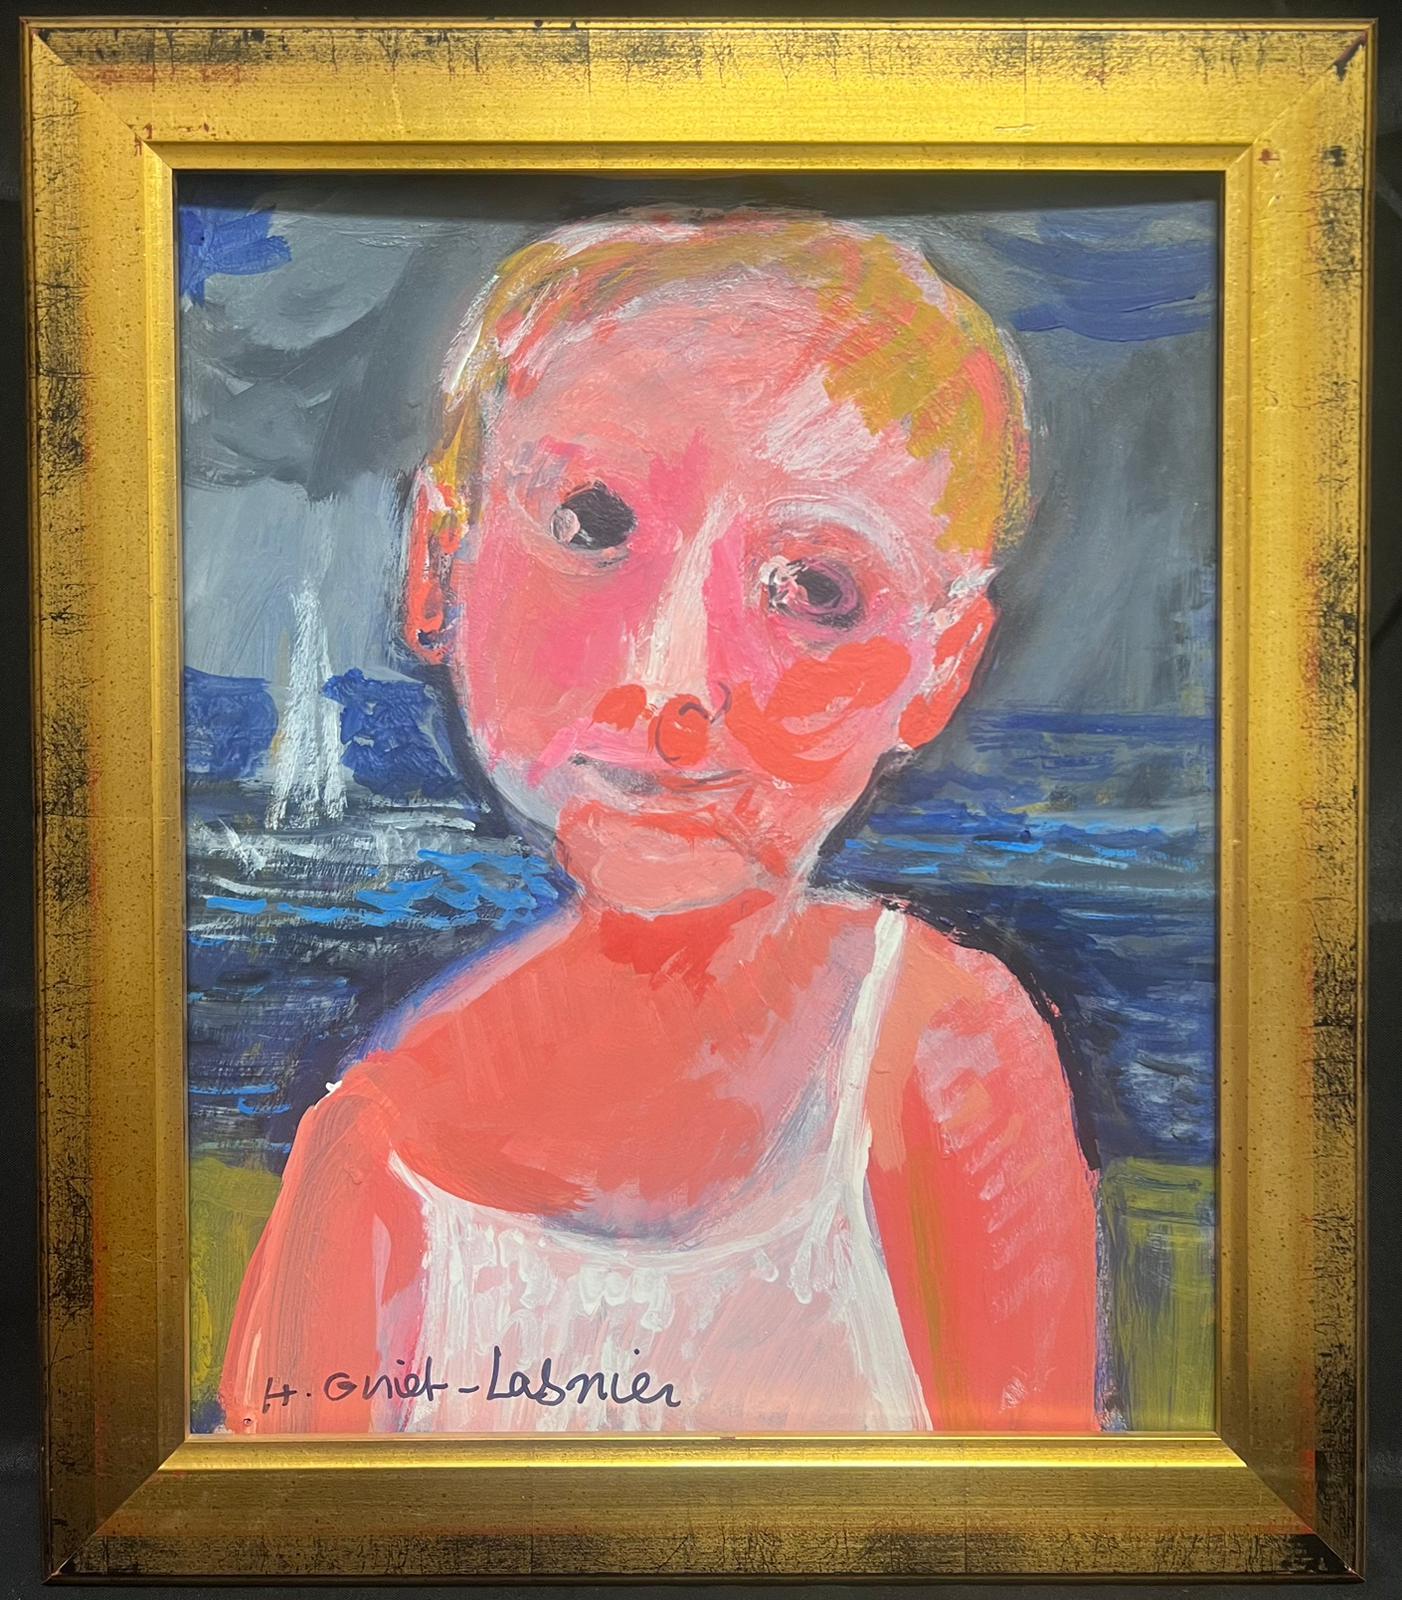 Portrait d'enfant sur plage avec mer et bateau, signé par le moderniste français - Painting de Huguette Ginet-Lasnier 